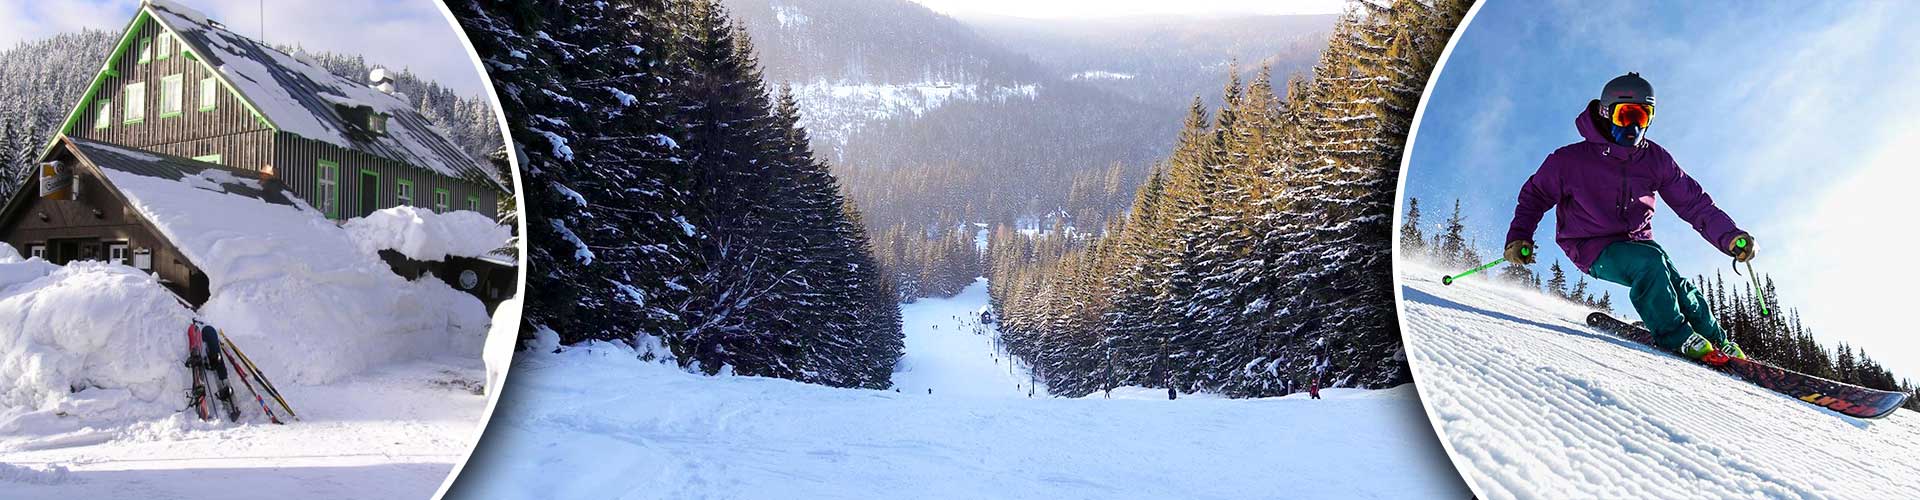 Chata Sport Ski